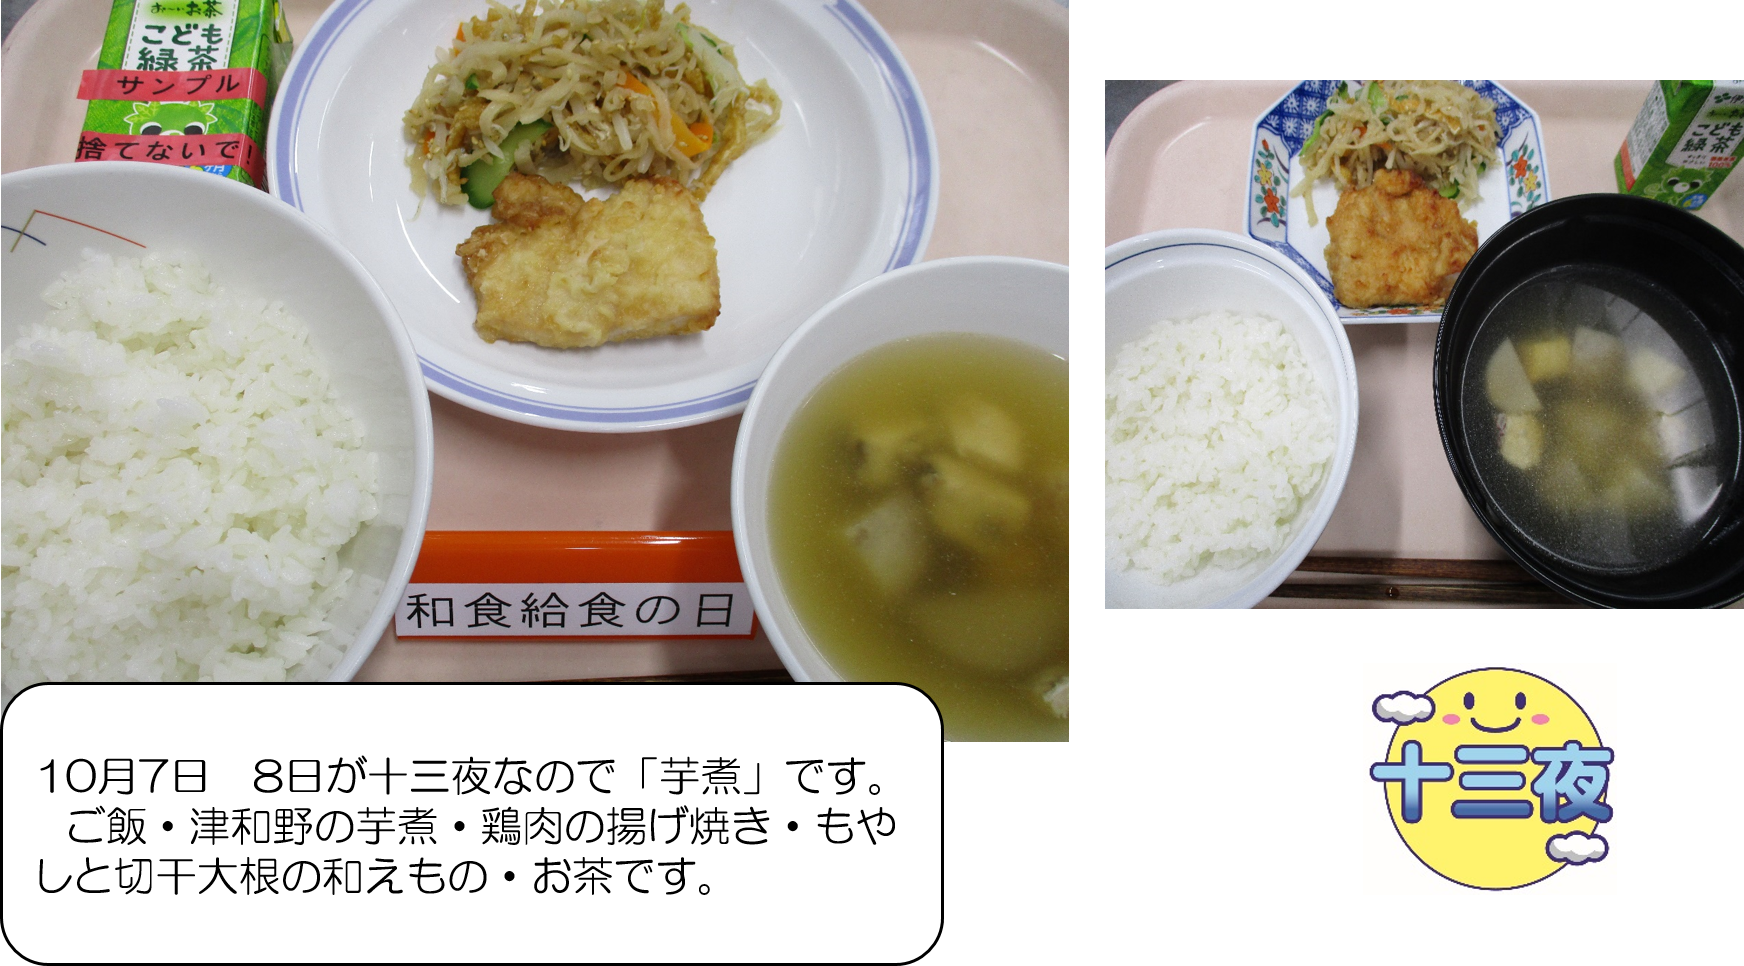 10月7日　8日が十三夜なので「芋煮」です。 ご飯・津和野の芋煮・鶏肉の揚げ焼き・もやしと切干大根の和えもの・お茶です。